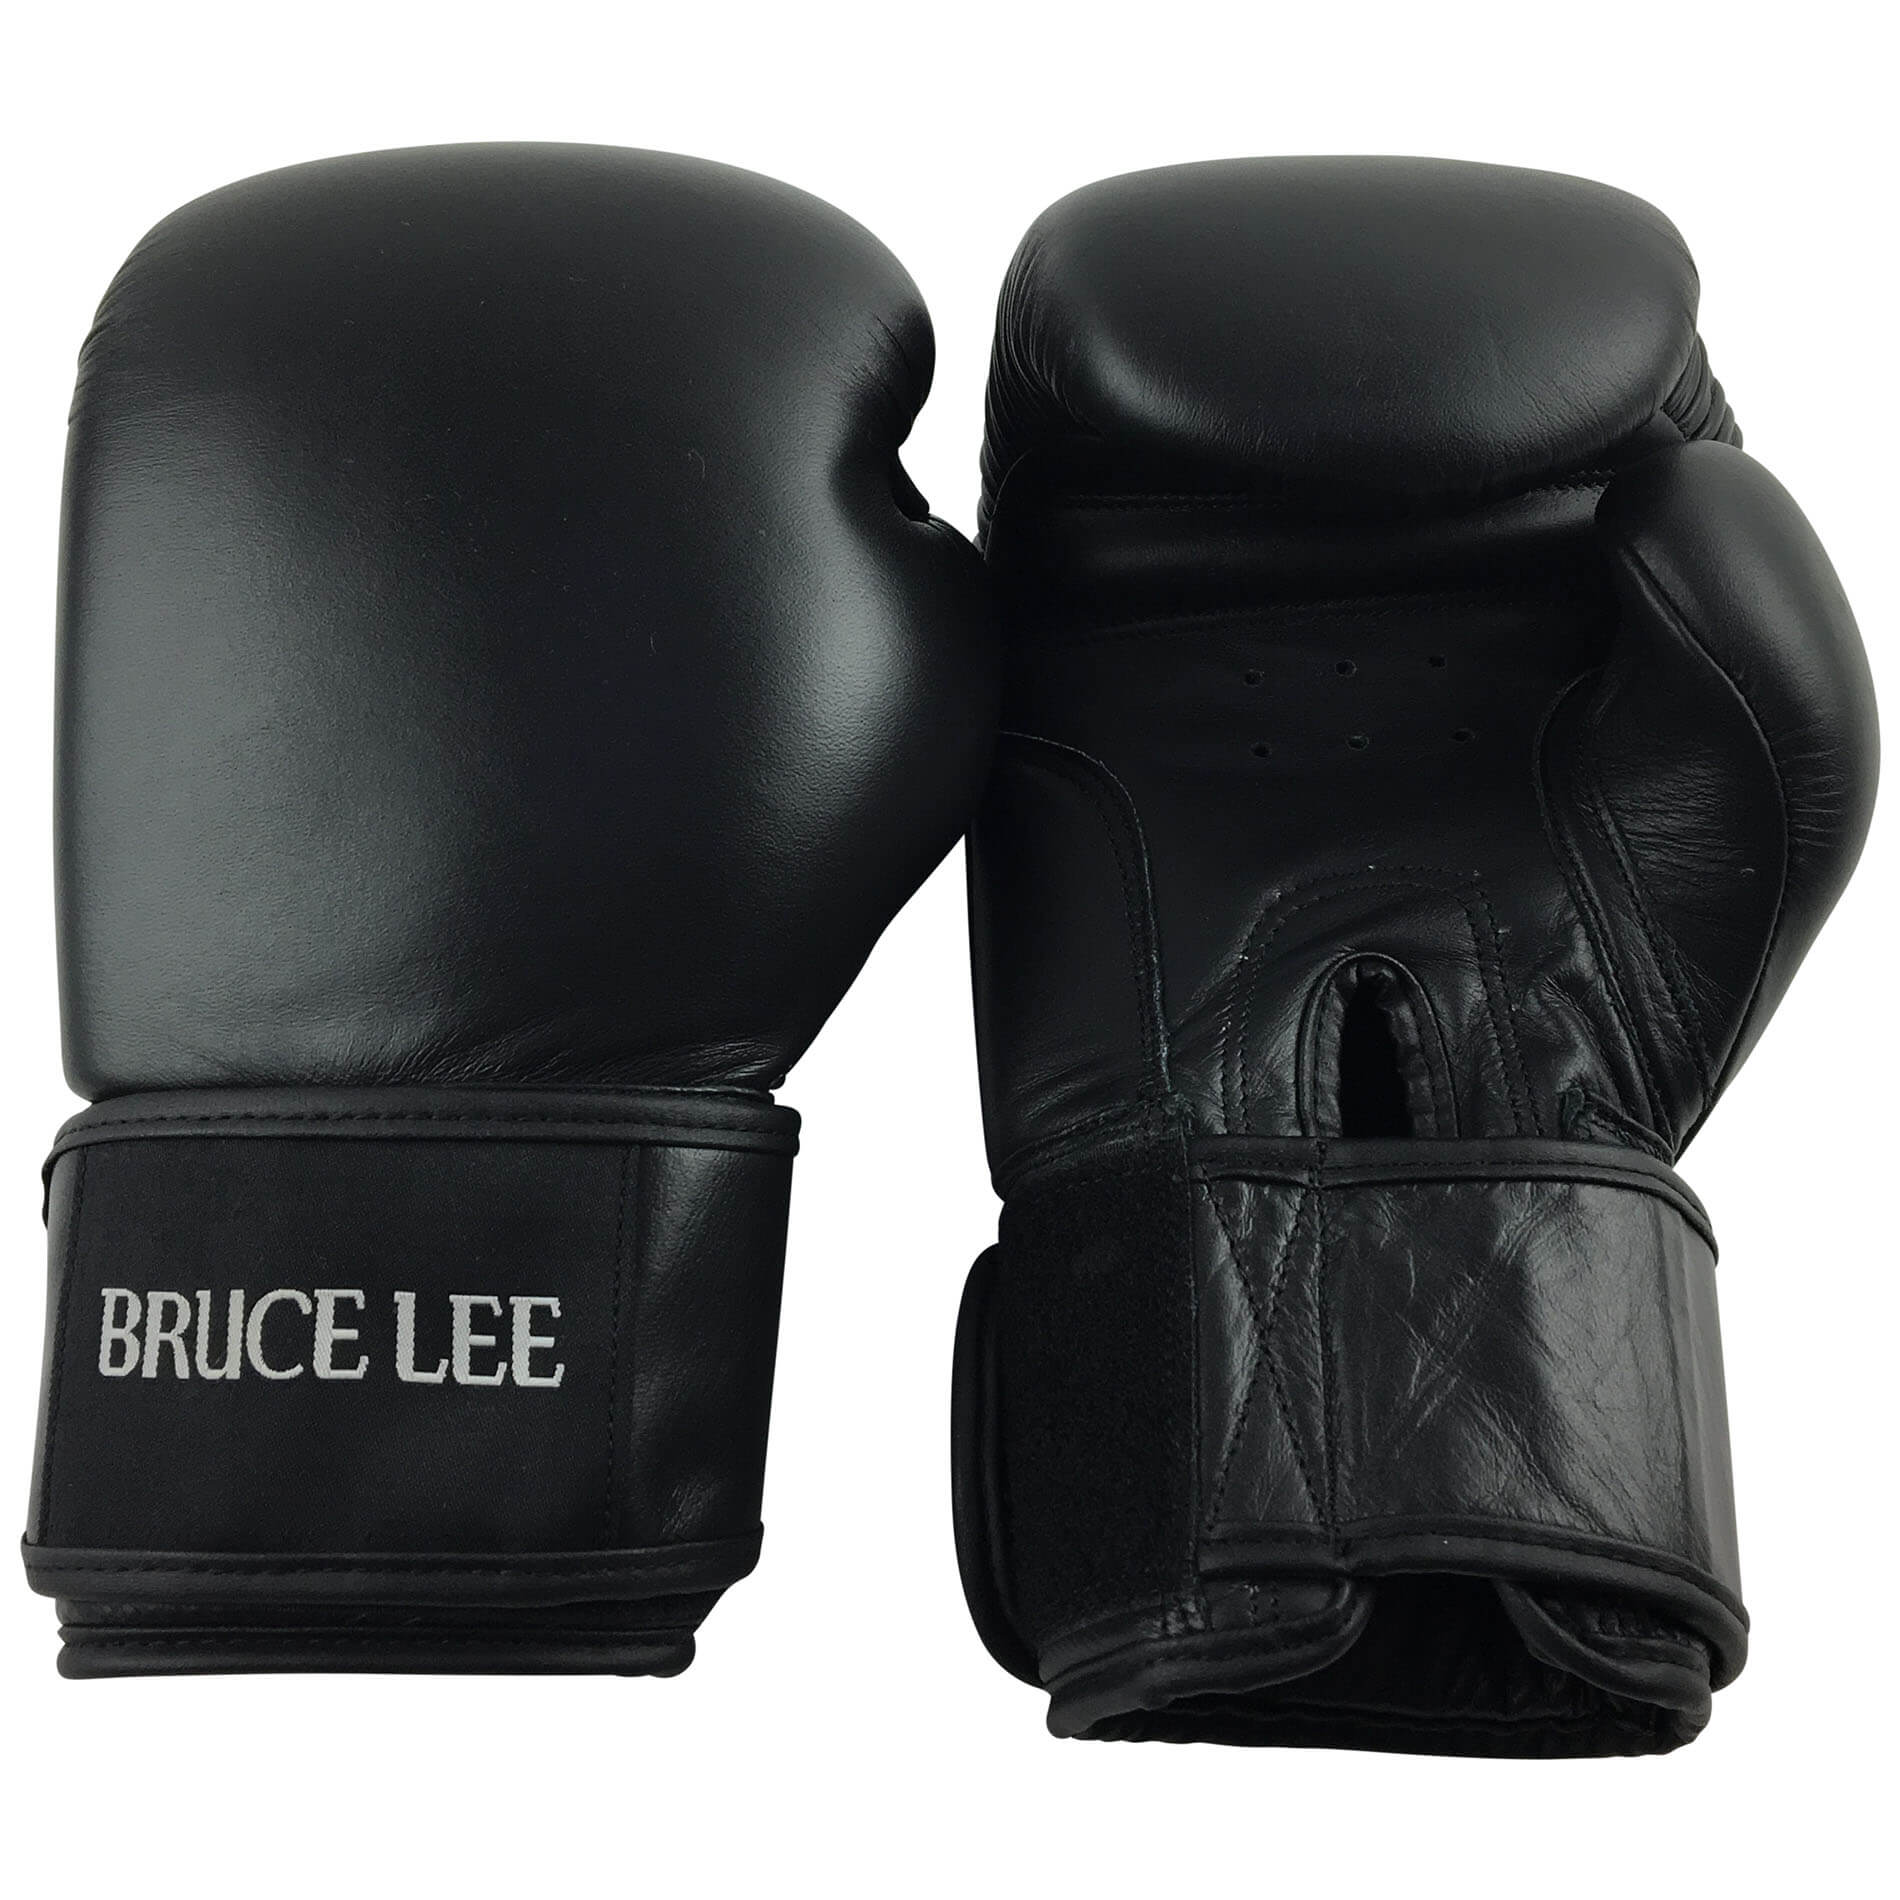 Boxerské rukavice BRUCE LEE Allround PRO vel. 16 oz